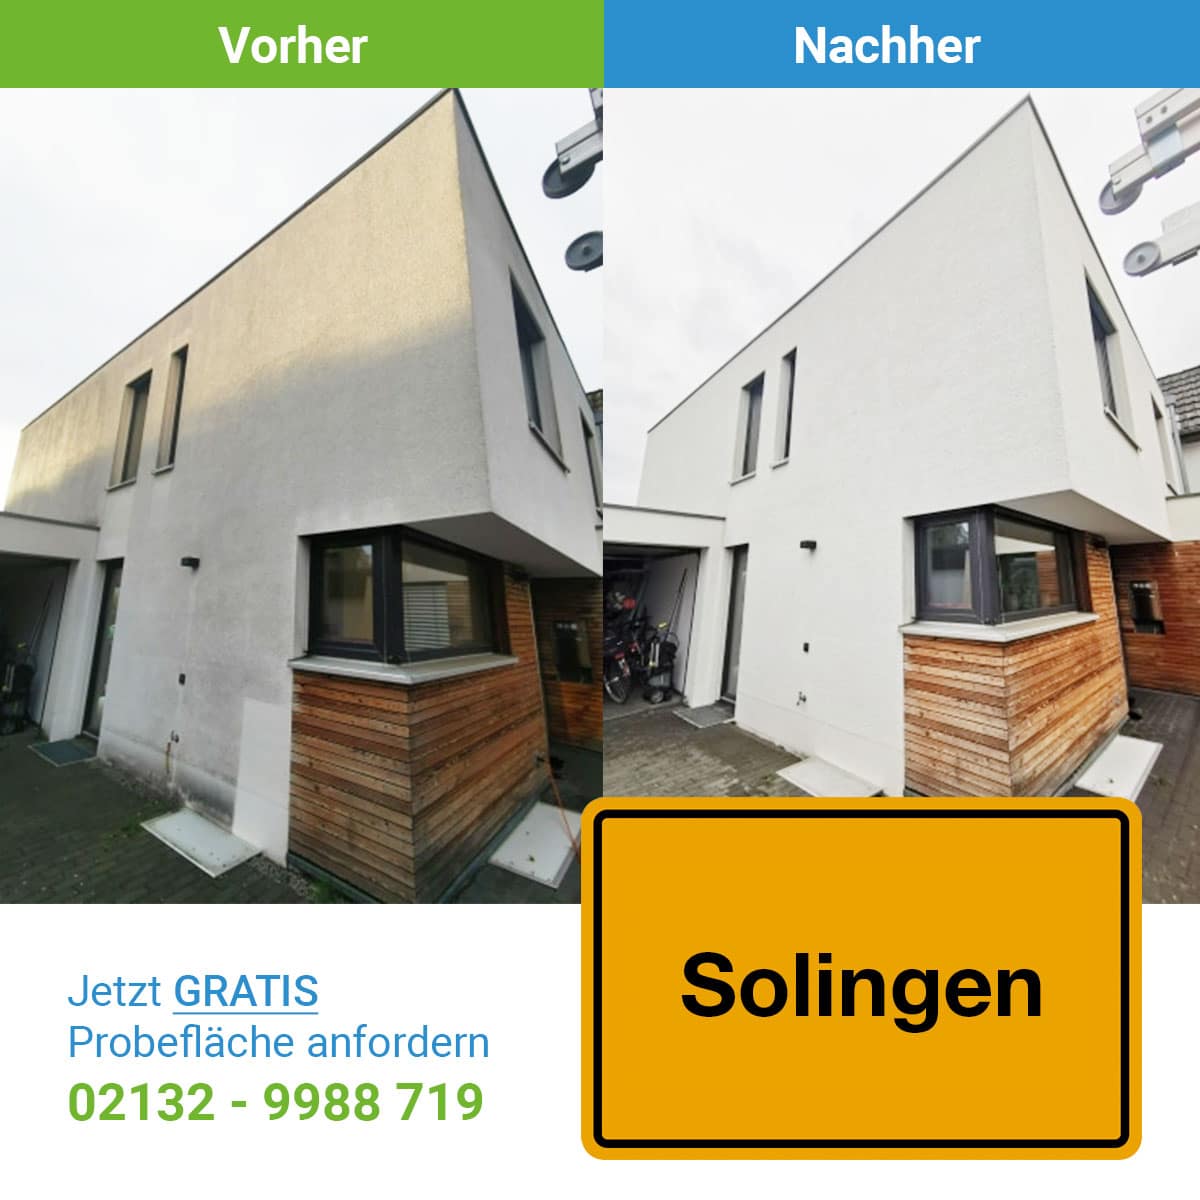 Fassadenreinigung in Solingen, SC SystemCare GmbH, ein Vorher-Nachher Bild mit dem Ergeniss der Reinigung -professionelle Fassadenreinigung